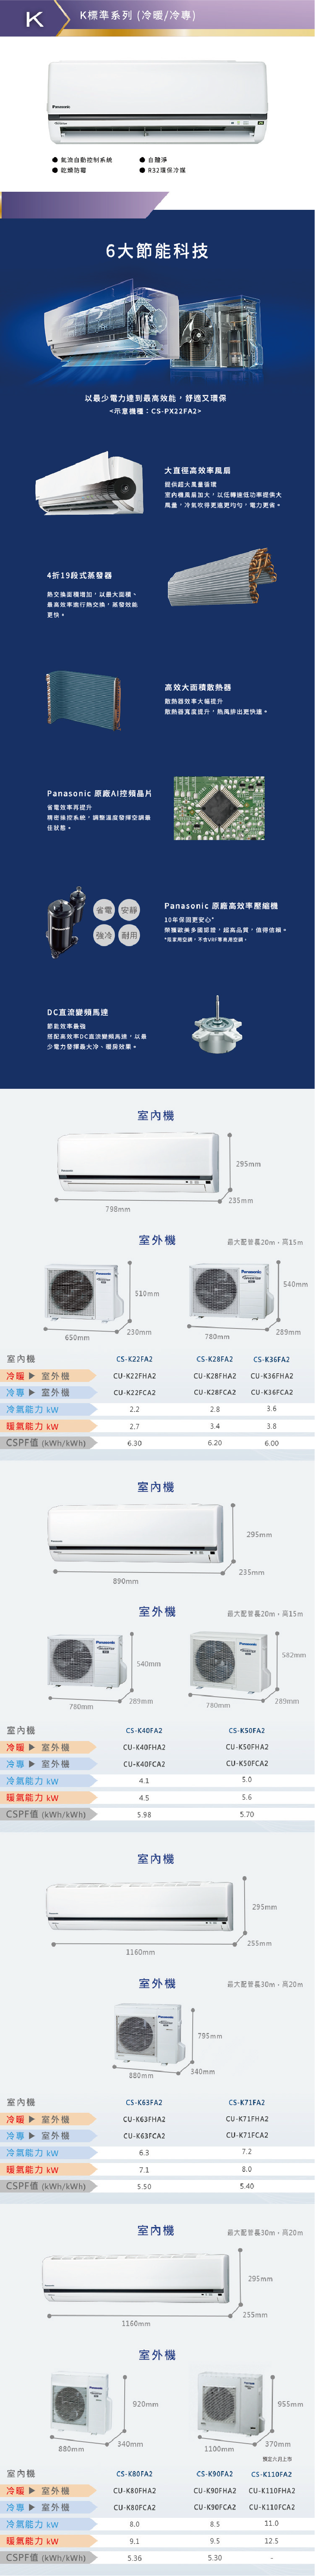 國際 CU-K71FCA2 12坪適用 K系列 分離式 變頻 冷專 冷氣 CS-K71FA2